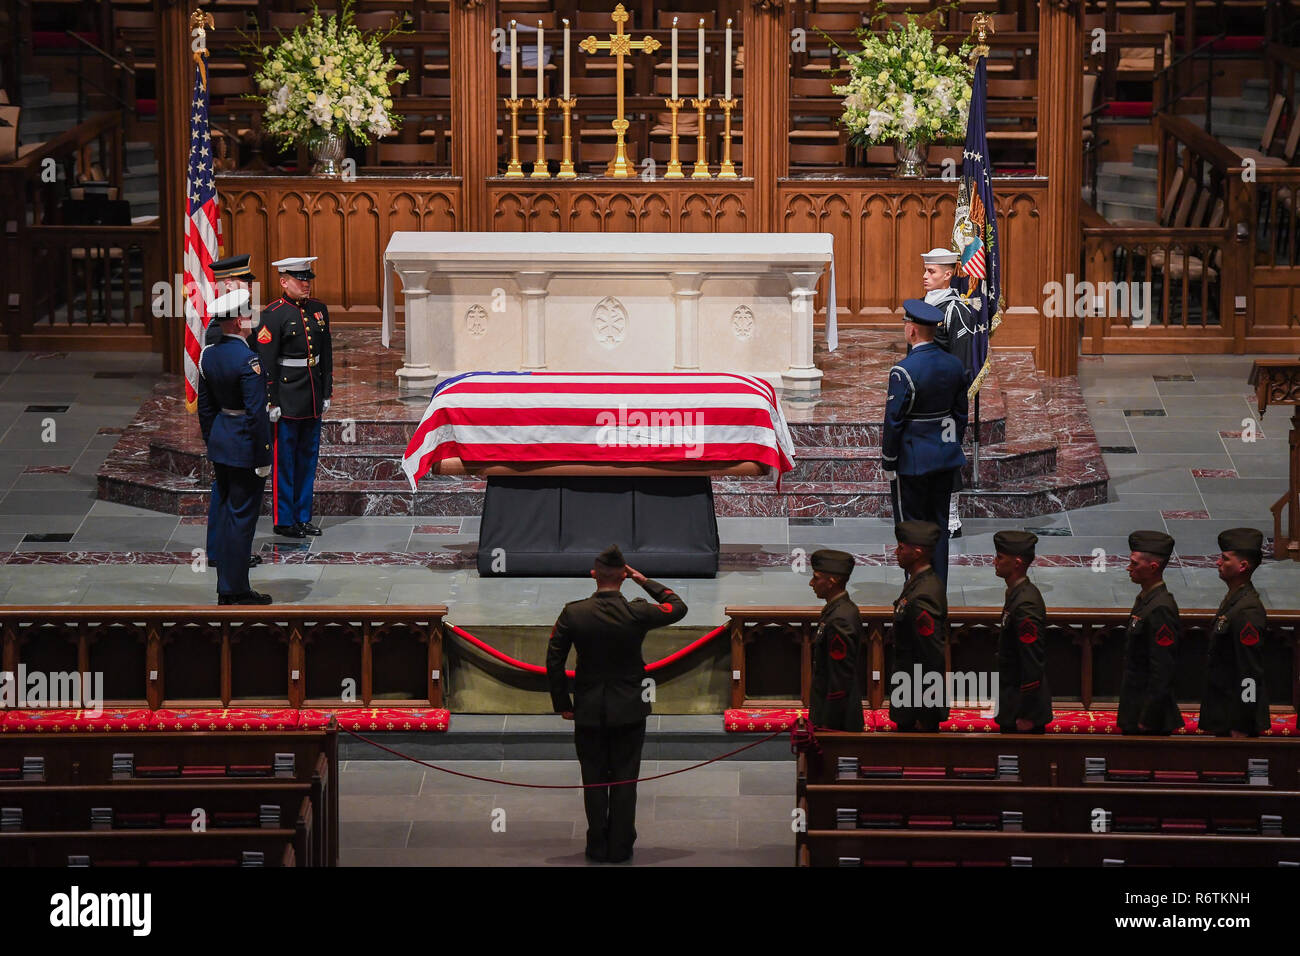 Un U.S. Marine salue le cercueil recouvert du drapeau de l'ancien président George H. W. Repos Bush rétablir à son domicile de l'église épiscopale Saint Martins après les funérailles nationales à Washington le 6 décembre 2018 à Houston, Texas. Bush, le 41e président, est décédé à son domicile de Houston à l'âge de 94 ans et sera enterré à sa bibliothèque présidentielle à la Texas A&M University. Banque D'Images